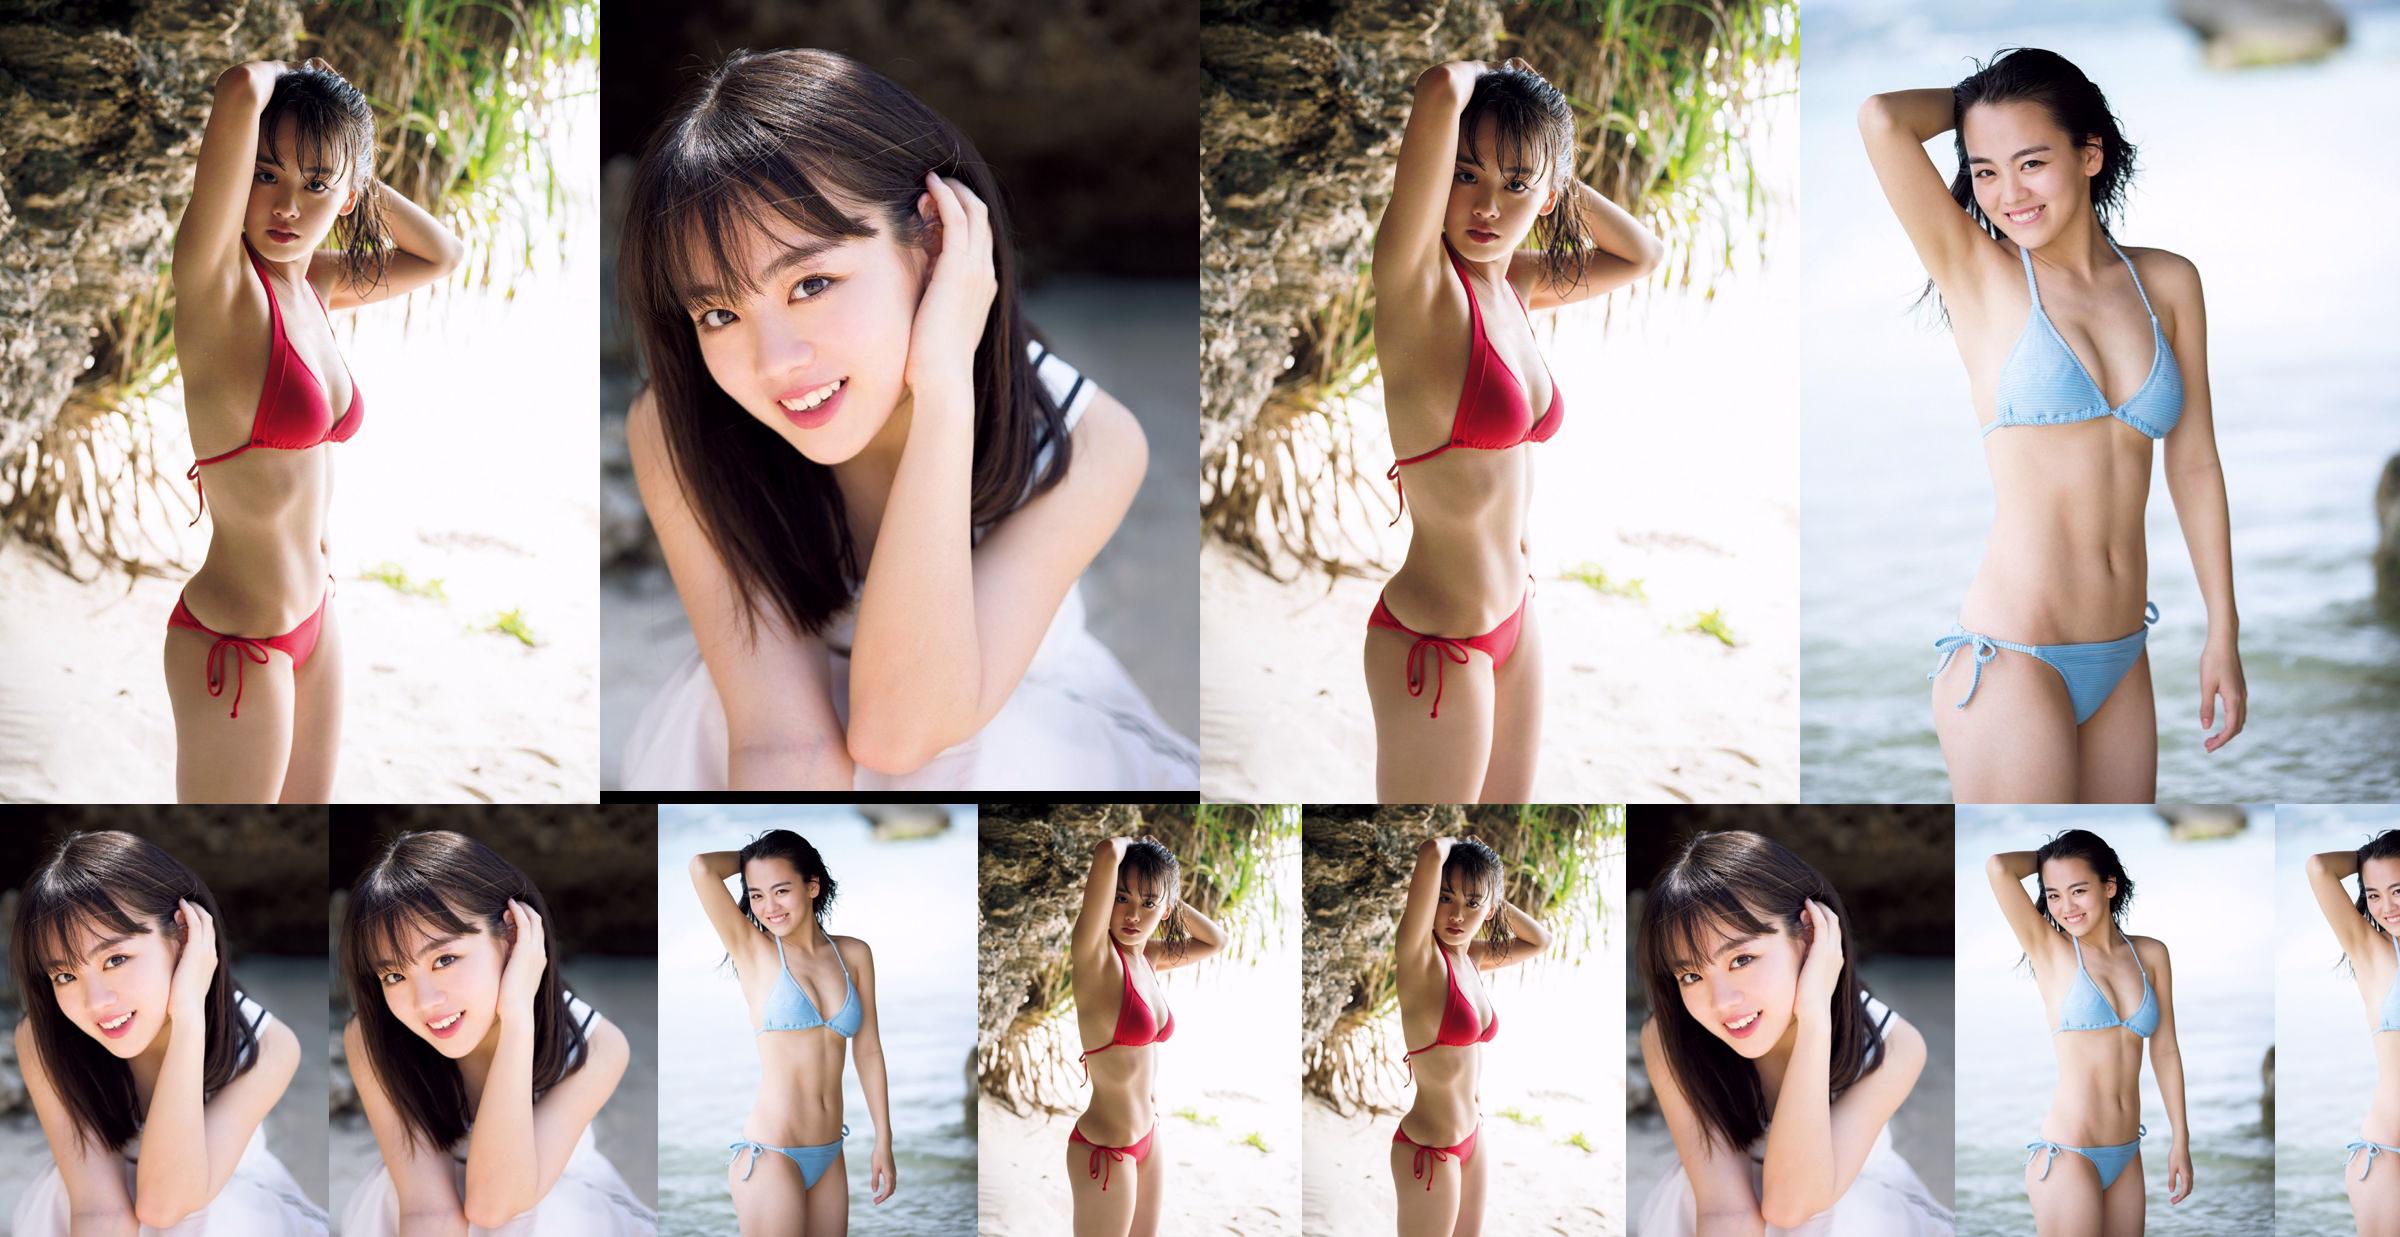 [วันศุกร์] Rikka Ihara << อดีตกัปตันชมรมเต้น Tomioka High School เปิดตัวในชุดบิกินี่ >> รูปภาพ No.01473c หน้า 1